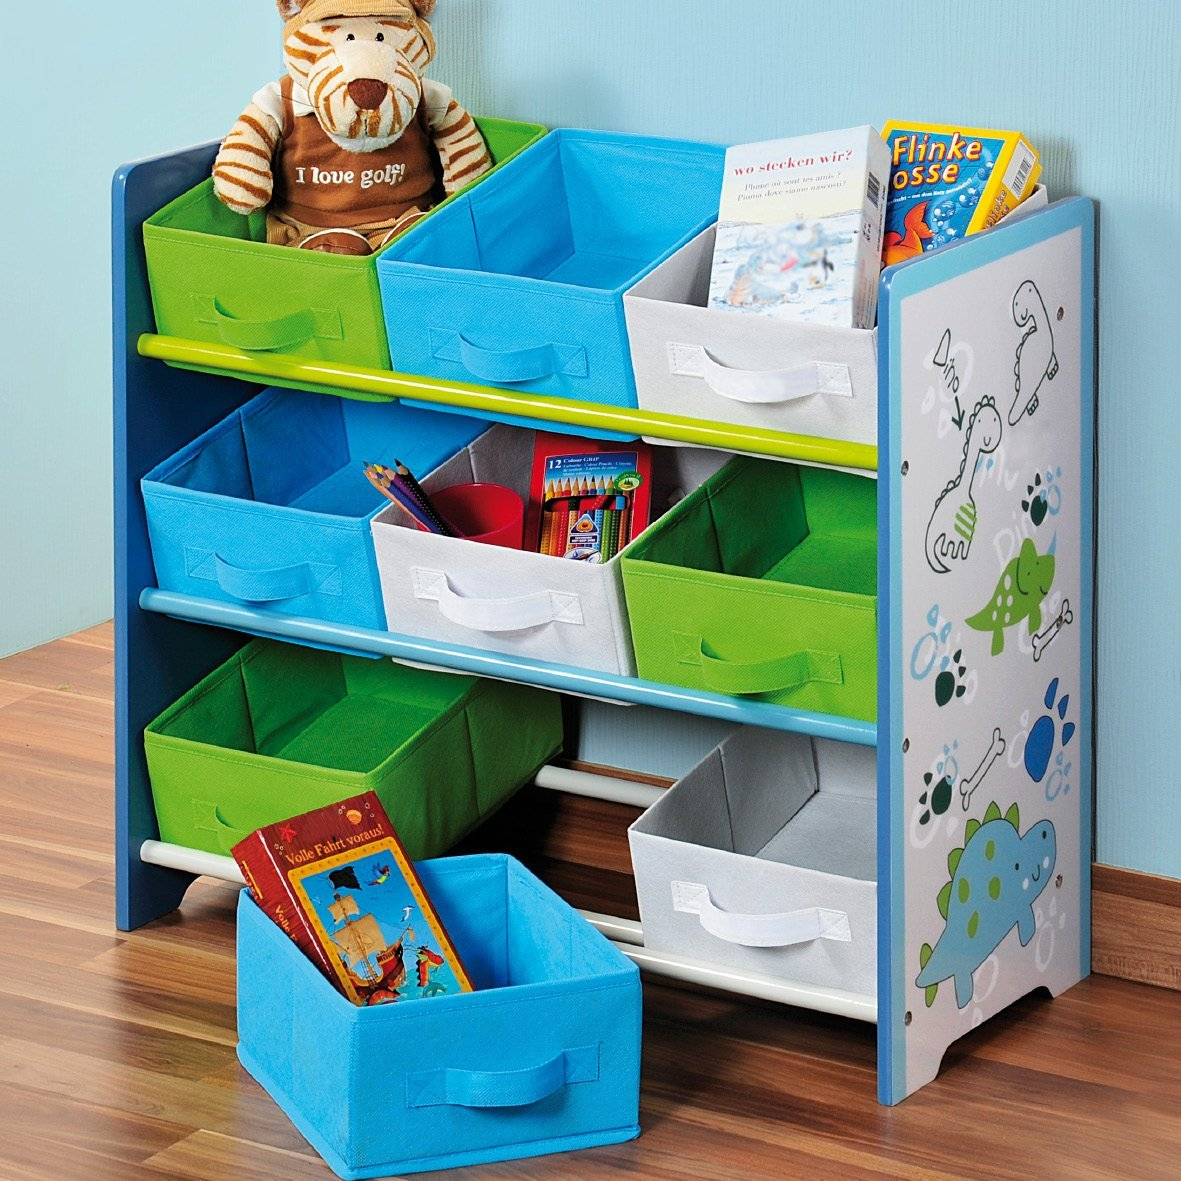 Хранение игрушек: лучшие идеи и решения, а также системы для хранения в интерьере детской комнаты